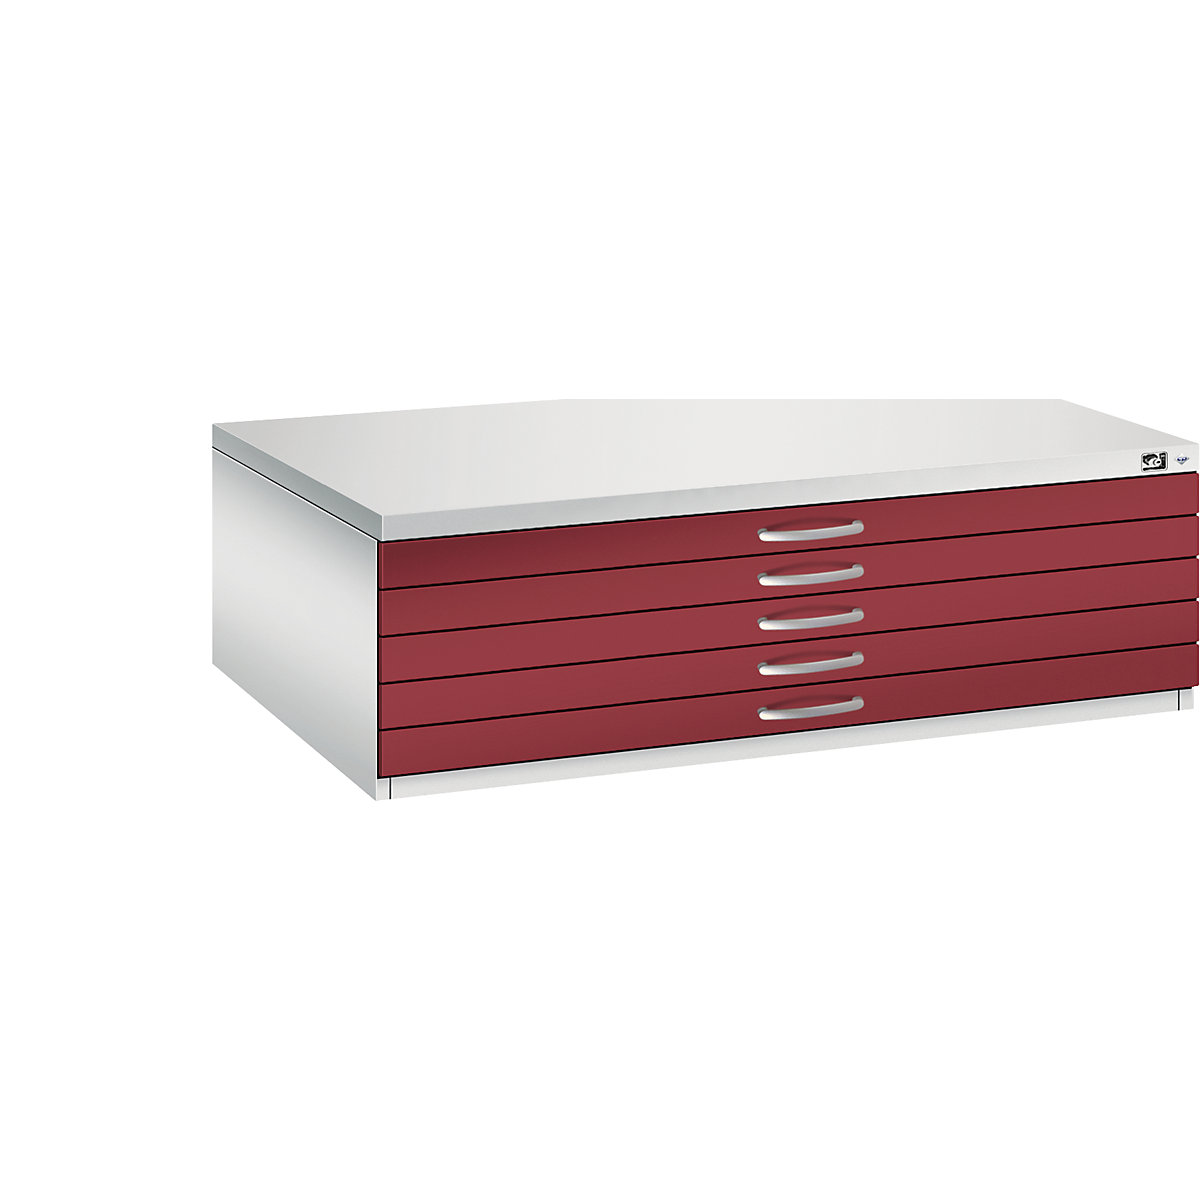 Dulap pentru planșe – C+P, DIN A0, 5 sertare, înălțime 420 mm, gri deschis / roșu rubin-11